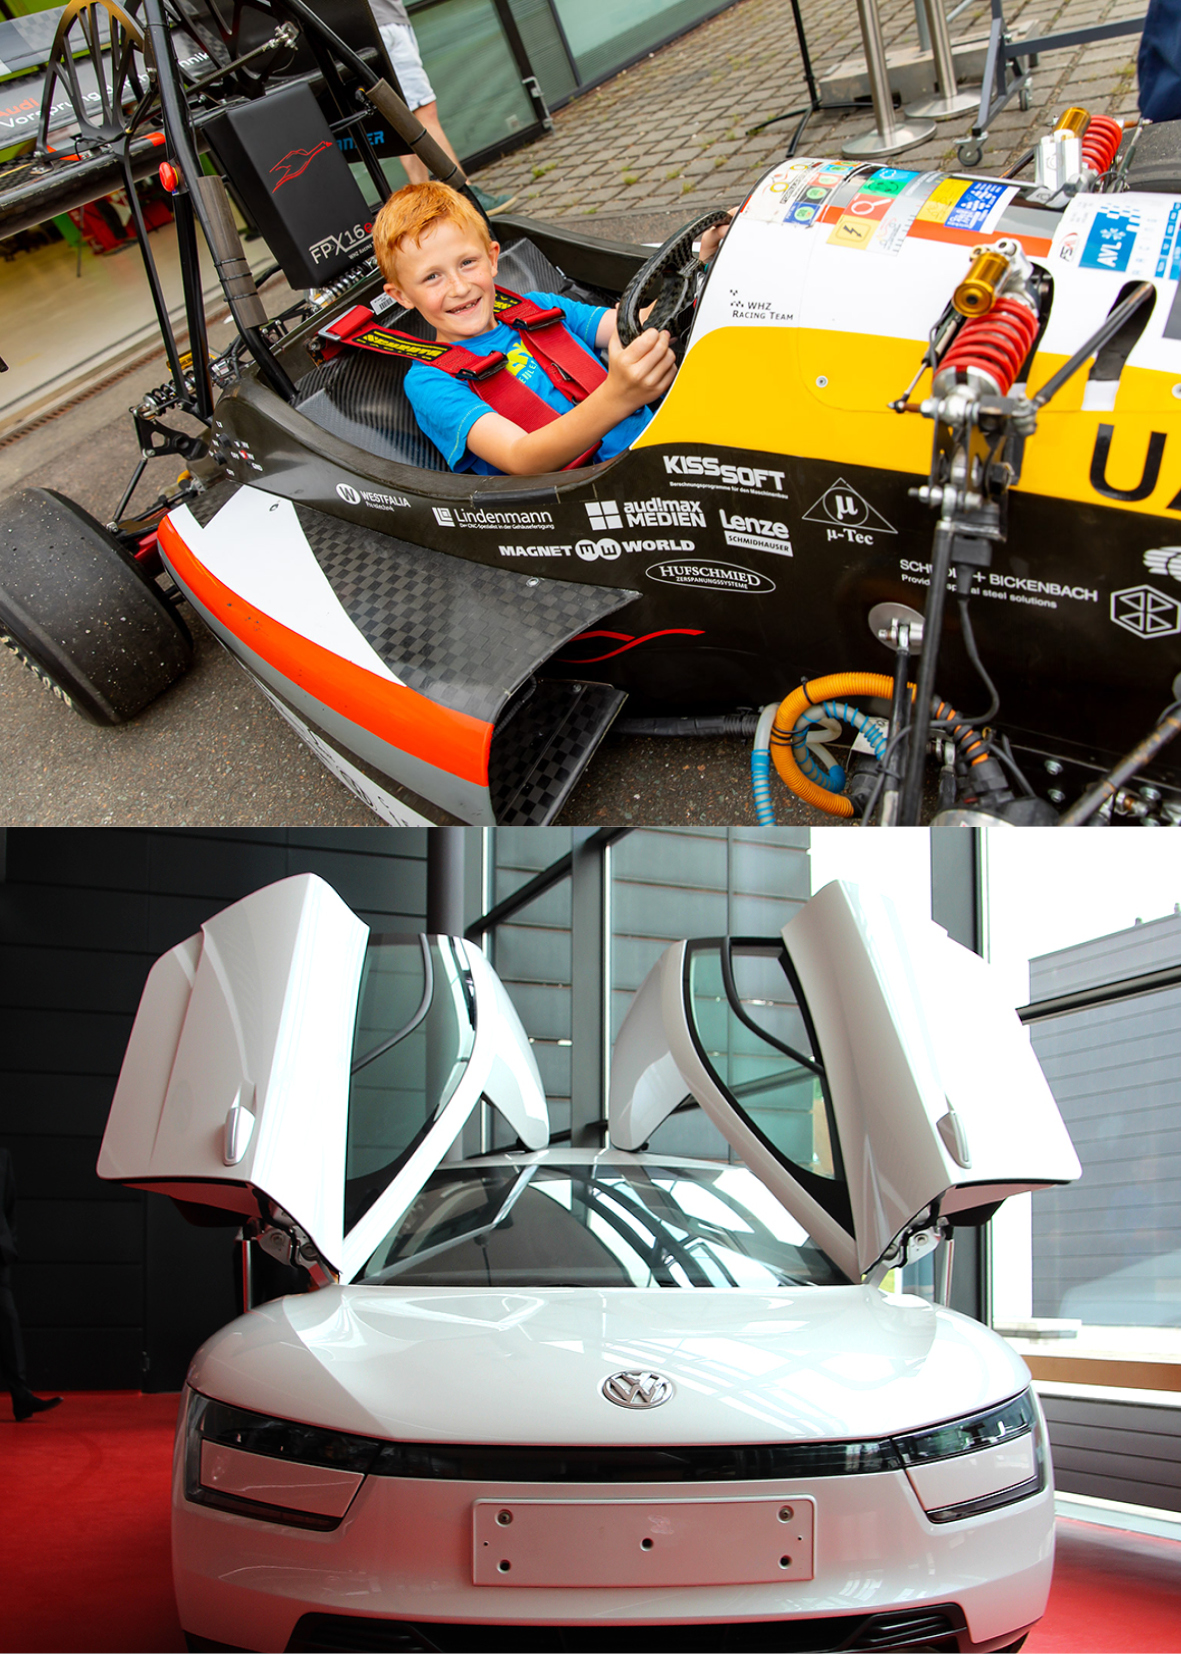 Oberes Bild: Ein Kind sitzt in einem Rennwagen und lächelt. Unteres Bild: Der VW-XL 1. Das Fahrzeug ist weiß, die beiden Flügeltüren an der Seite sind geöffnet und nach oben geklappt. 